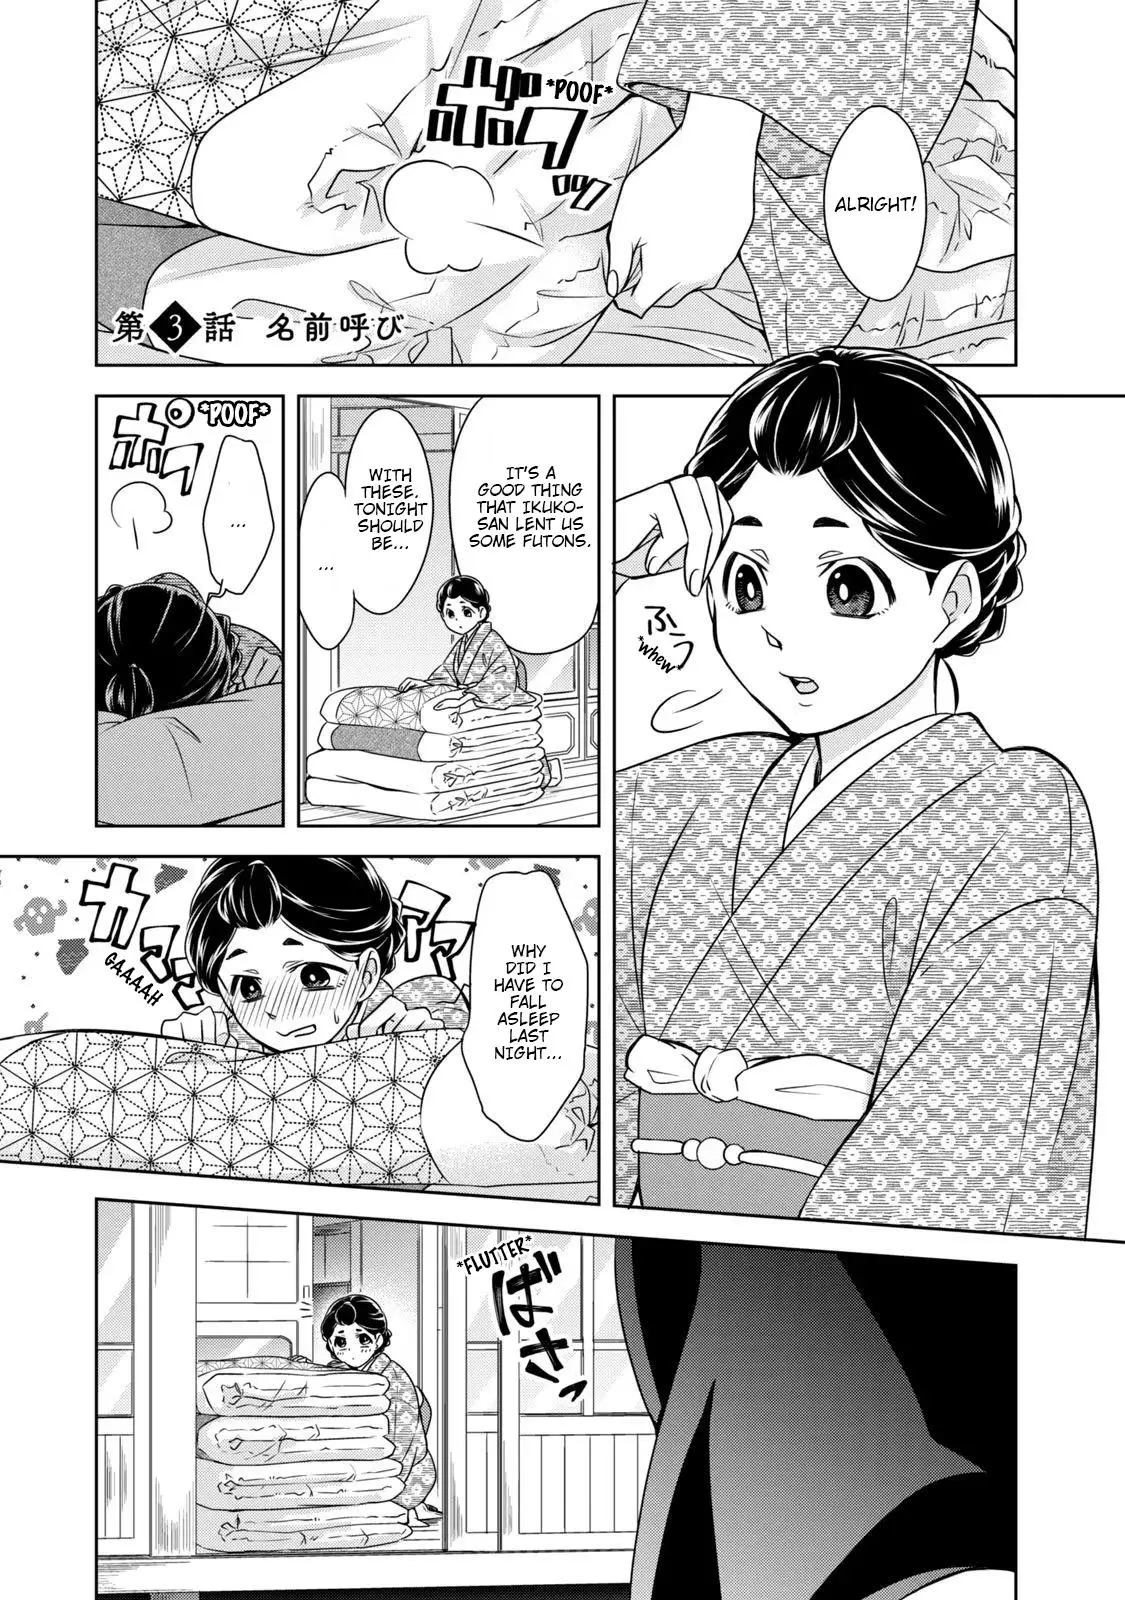 Nami Uraraka Ni, Meoto Biyori - 3 page 1-19474726